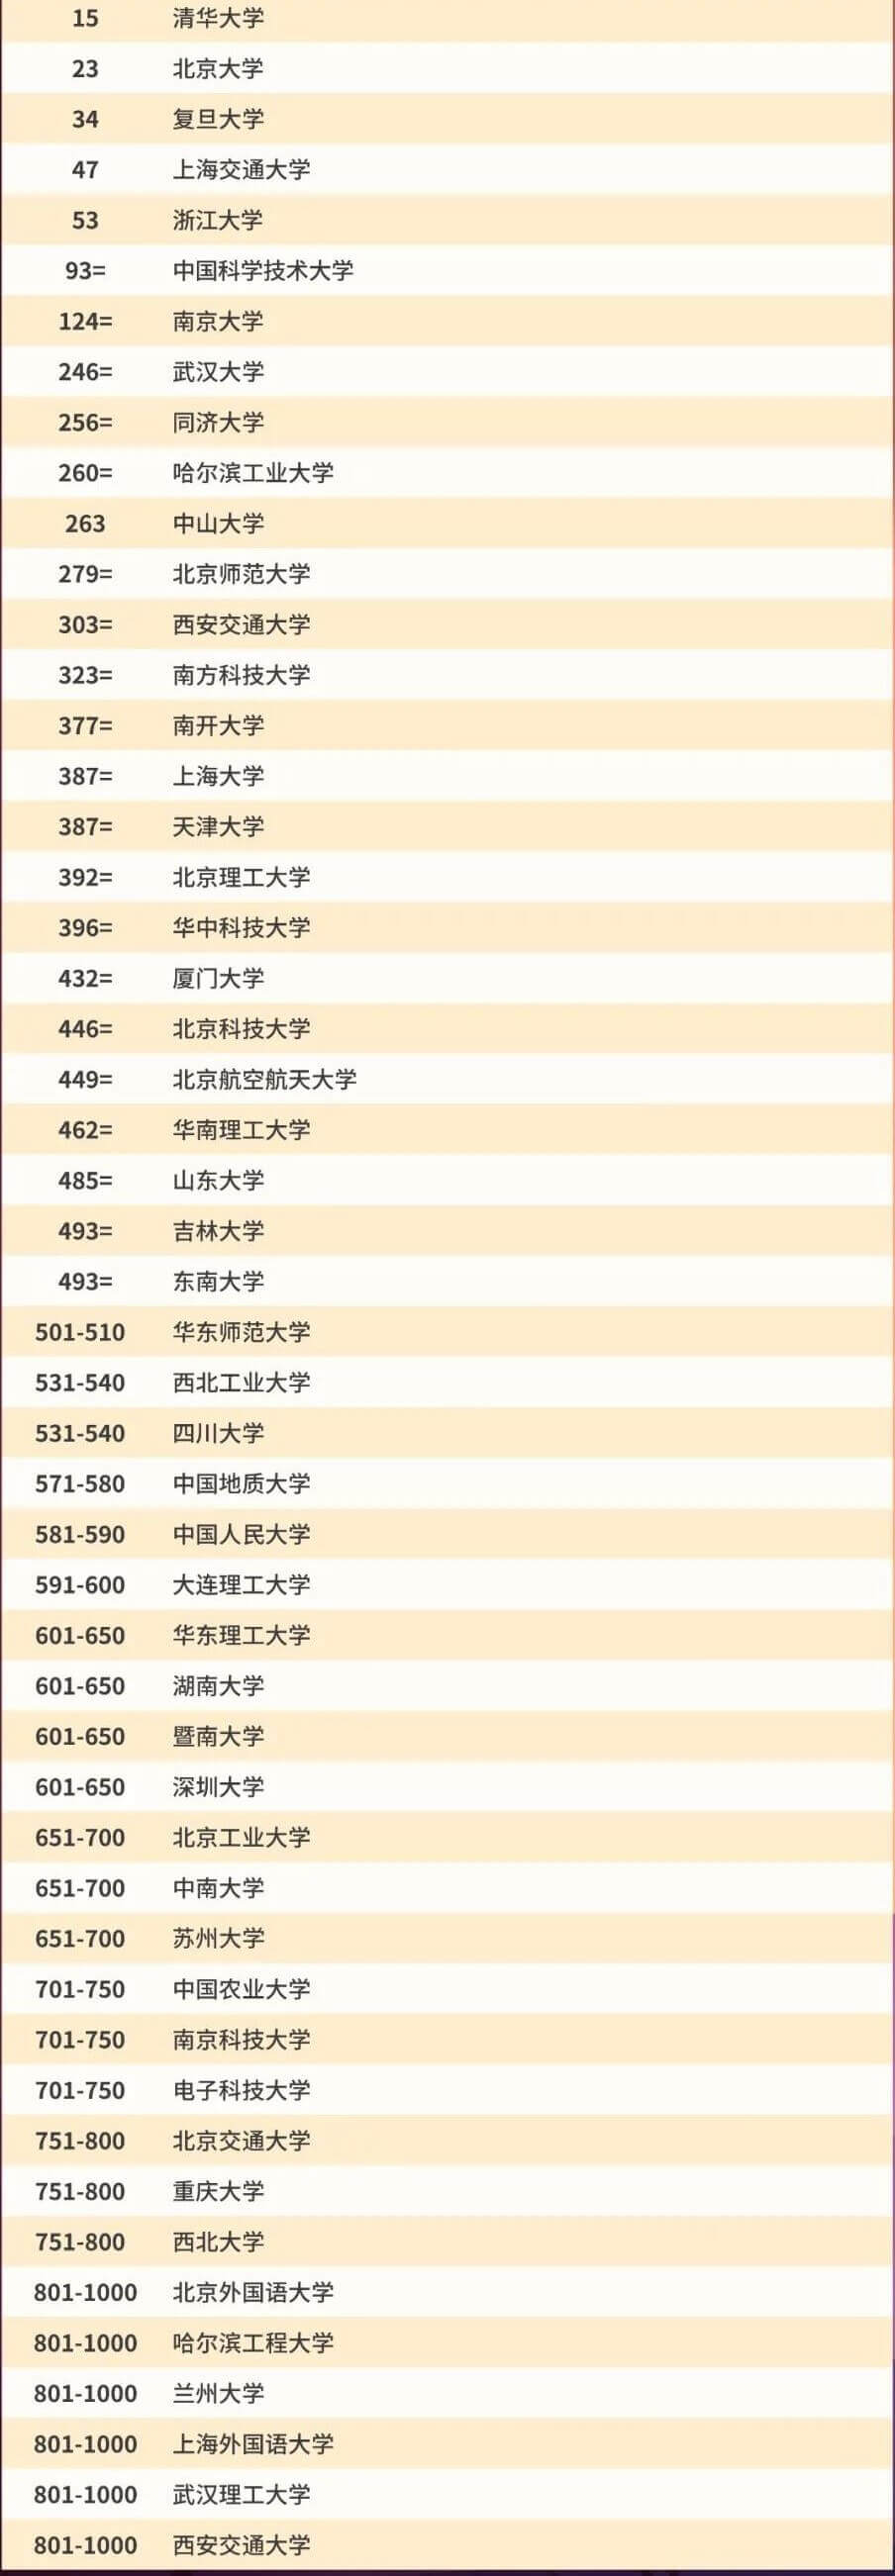 中国大陆地区大学排名